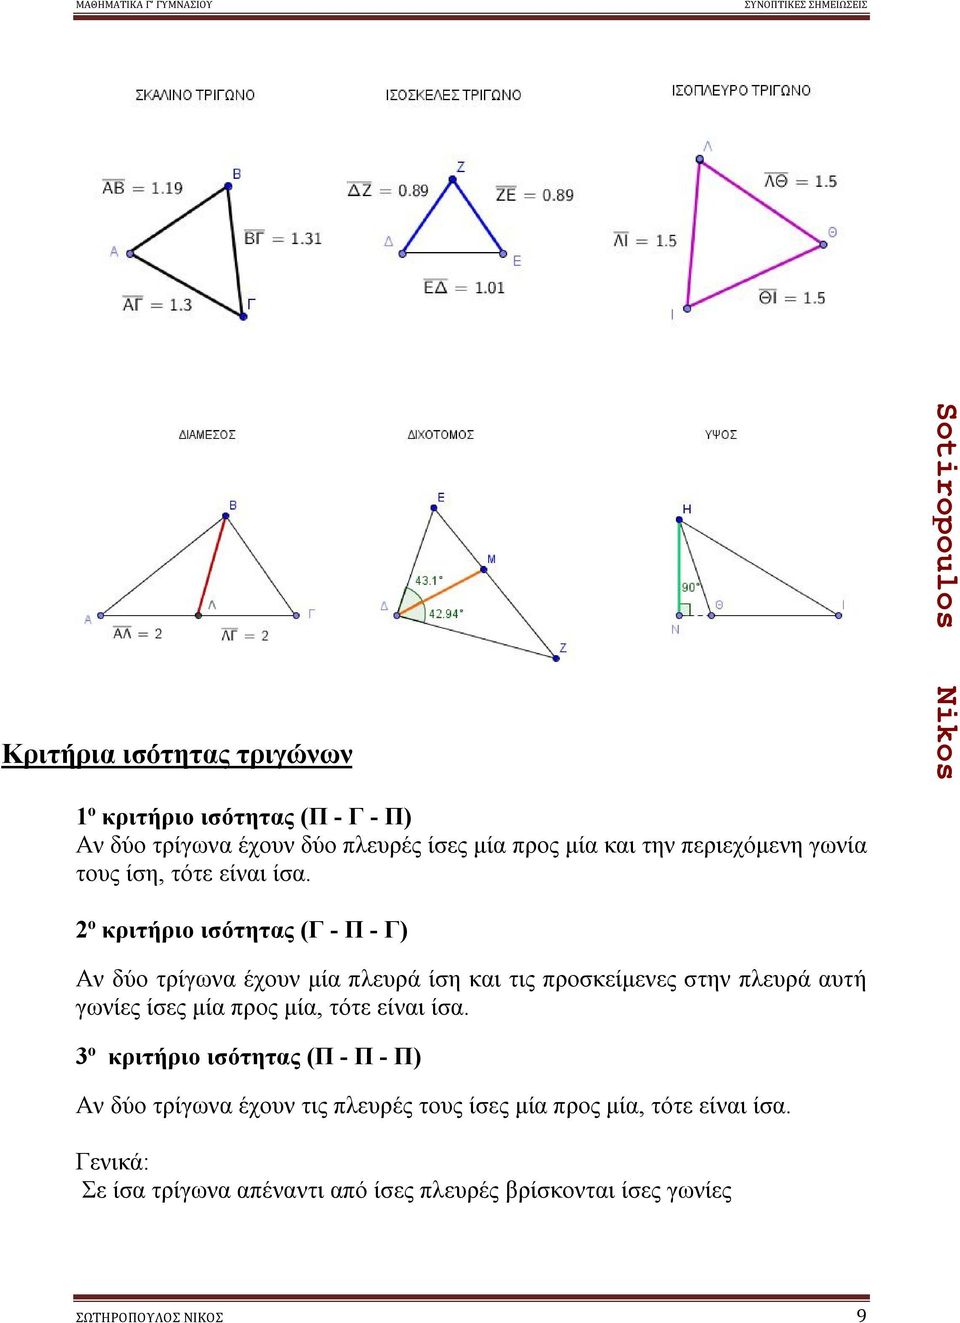 ο κριτήριο ισότητας (Γ - Π - Γ) Αν δύο τρίγωνα έχουν μία πλευρά ίση και τις προσκείμενες στην πλευρά αυτή γωνίες ίσες μία προς